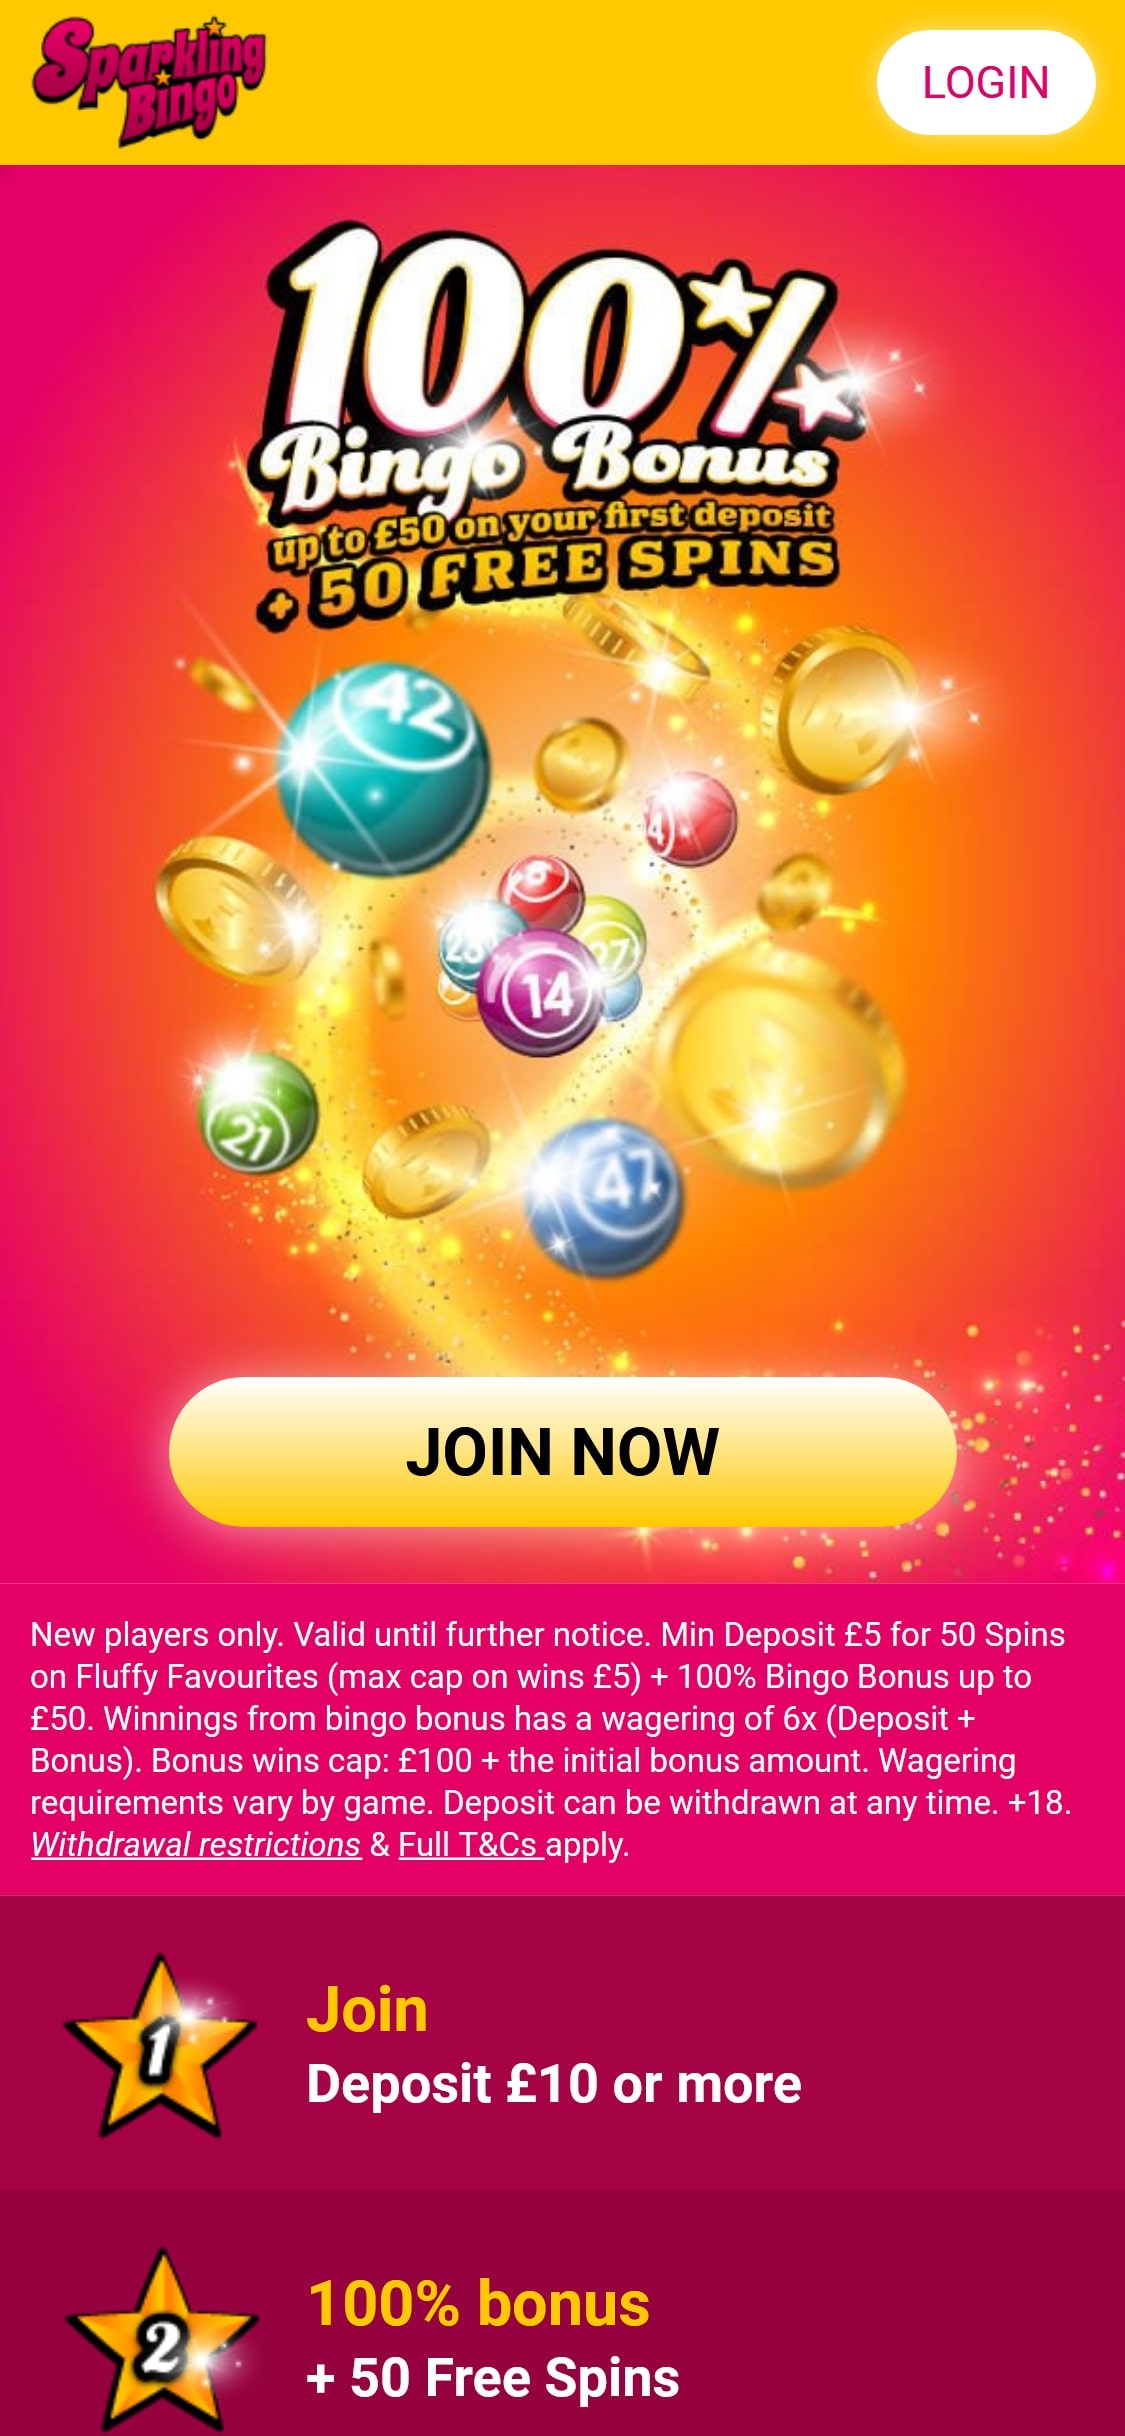 Sparkling Bingo Casino Mobile Review